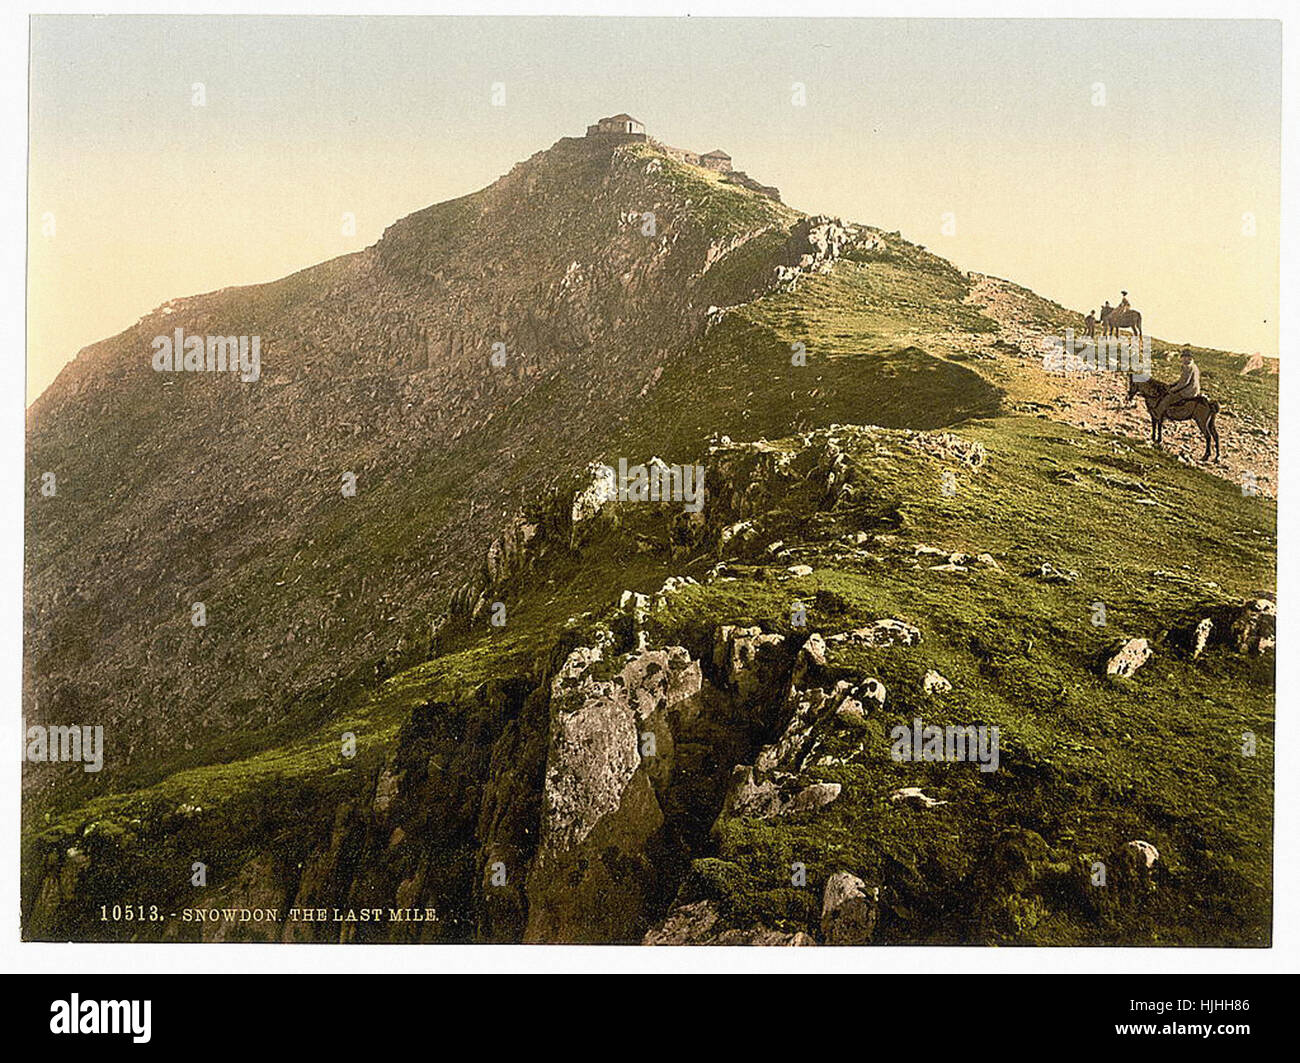 Chemin de fer, le dernier kilomètre, Snowdon, Pays de Galles - Photochrom xixème siècle Banque D'Images